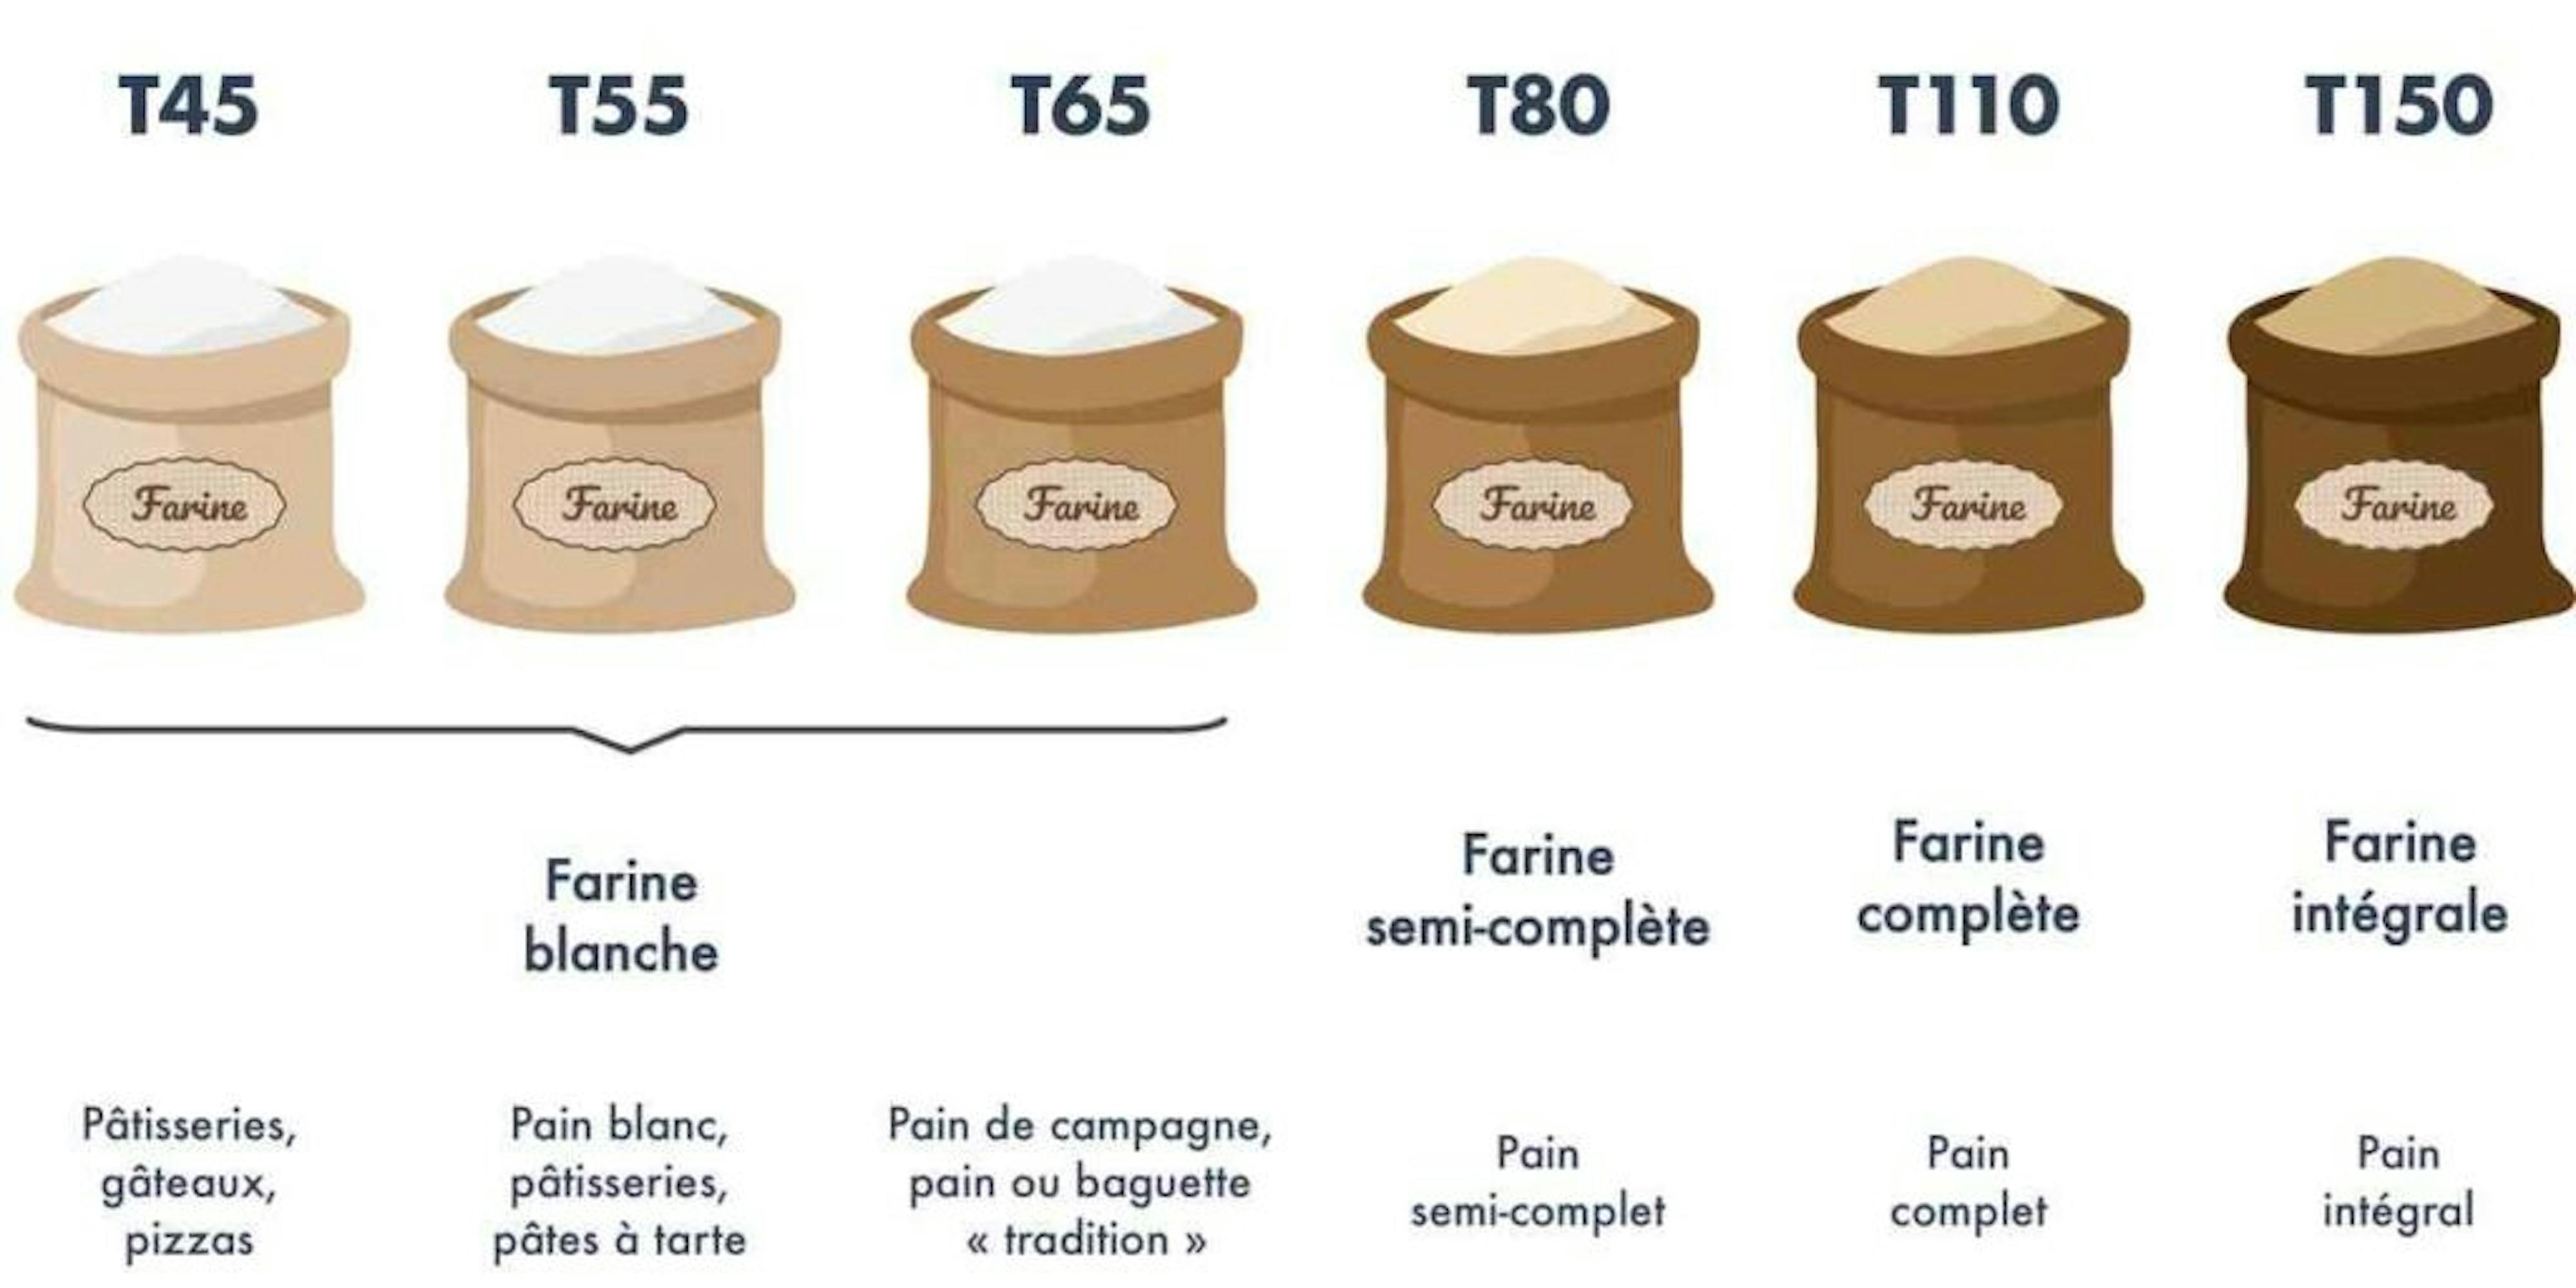 Comparaison de la tamisation de la farine